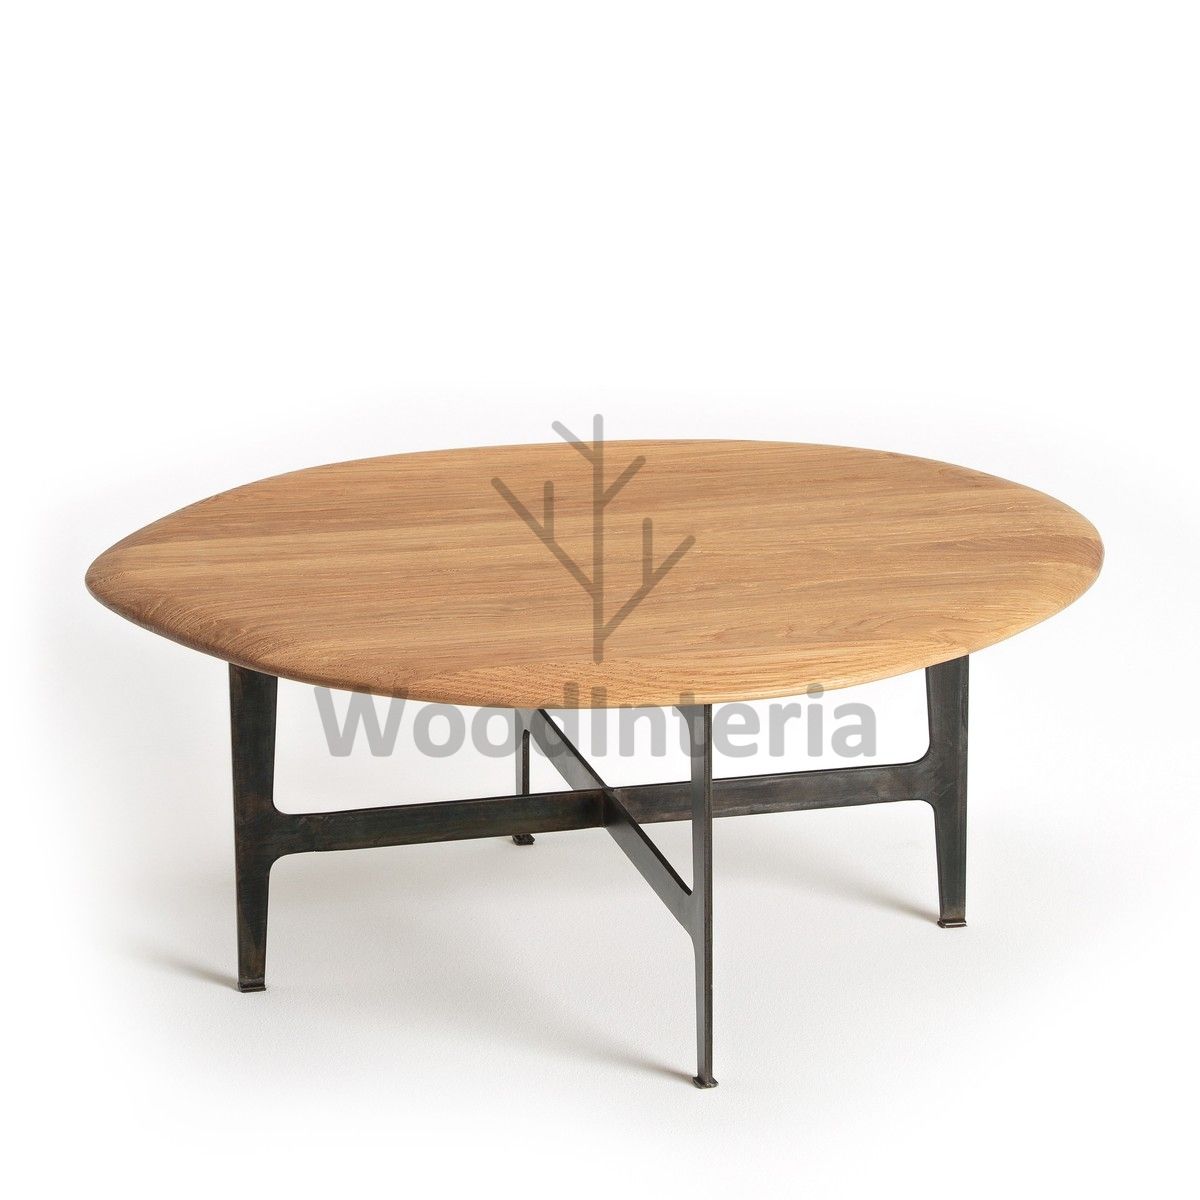 фото кофейный столик olivia small в интерьере лофт эко | WoodInteria